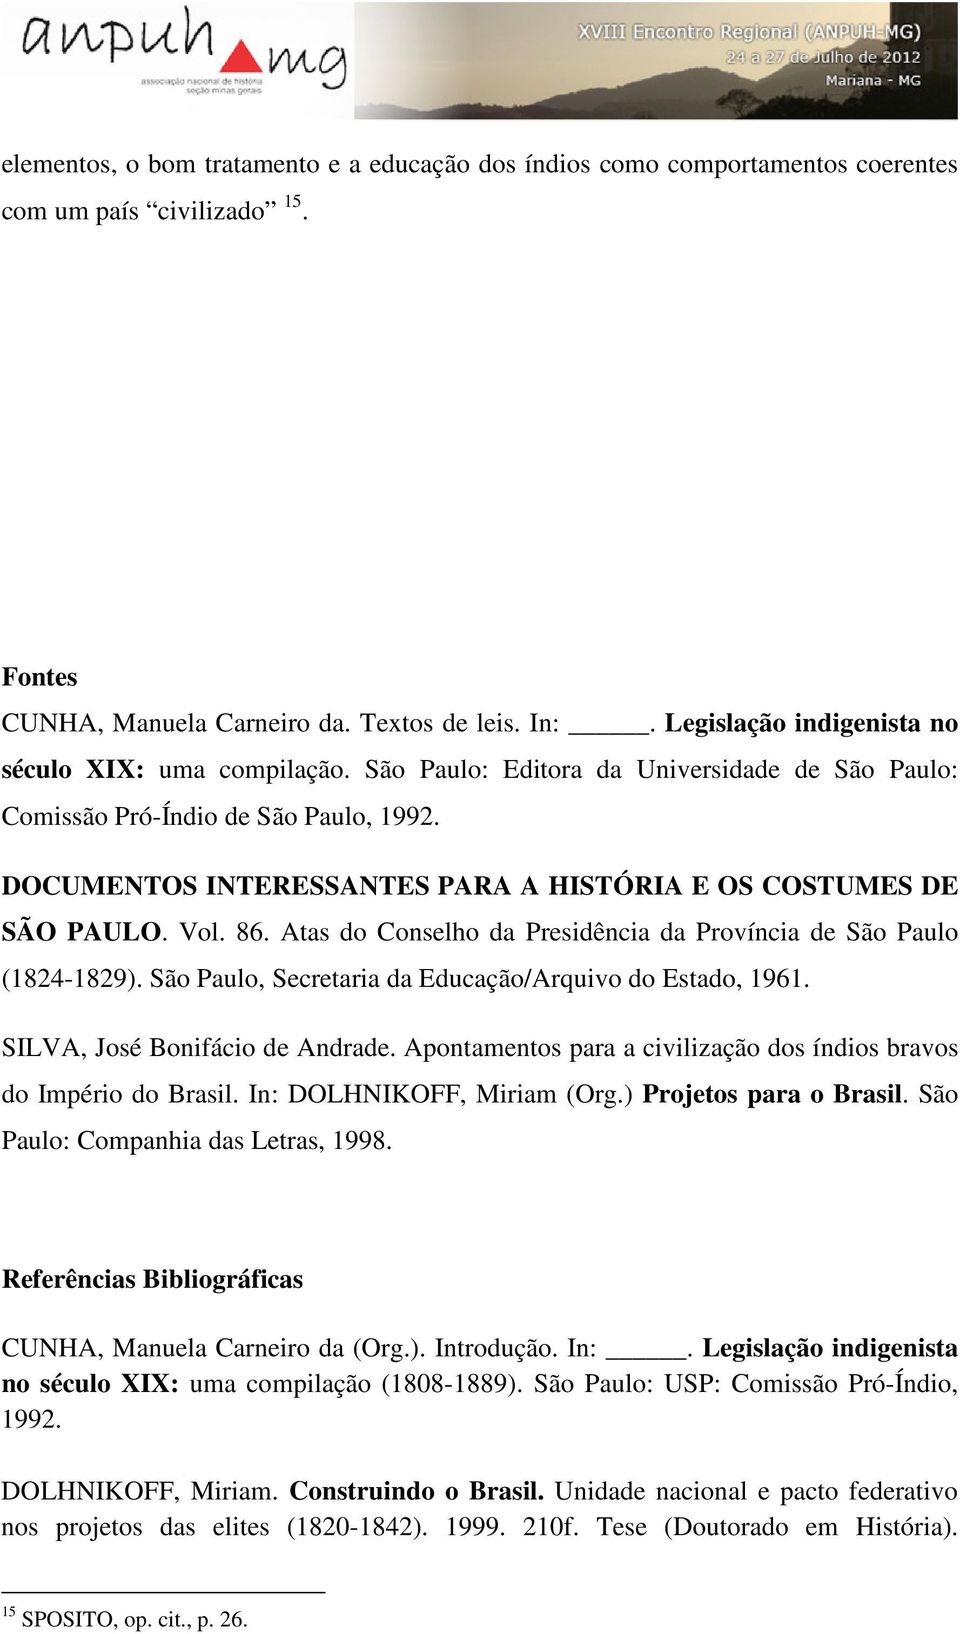 DOCUMENTOS INTERESSANTES PARA A HISTÓRIA E OS COSTUMES DE SÃO PAULO. Vol. 86. Atas do Conselho da Presidência da Província de São Paulo (1824-1829).